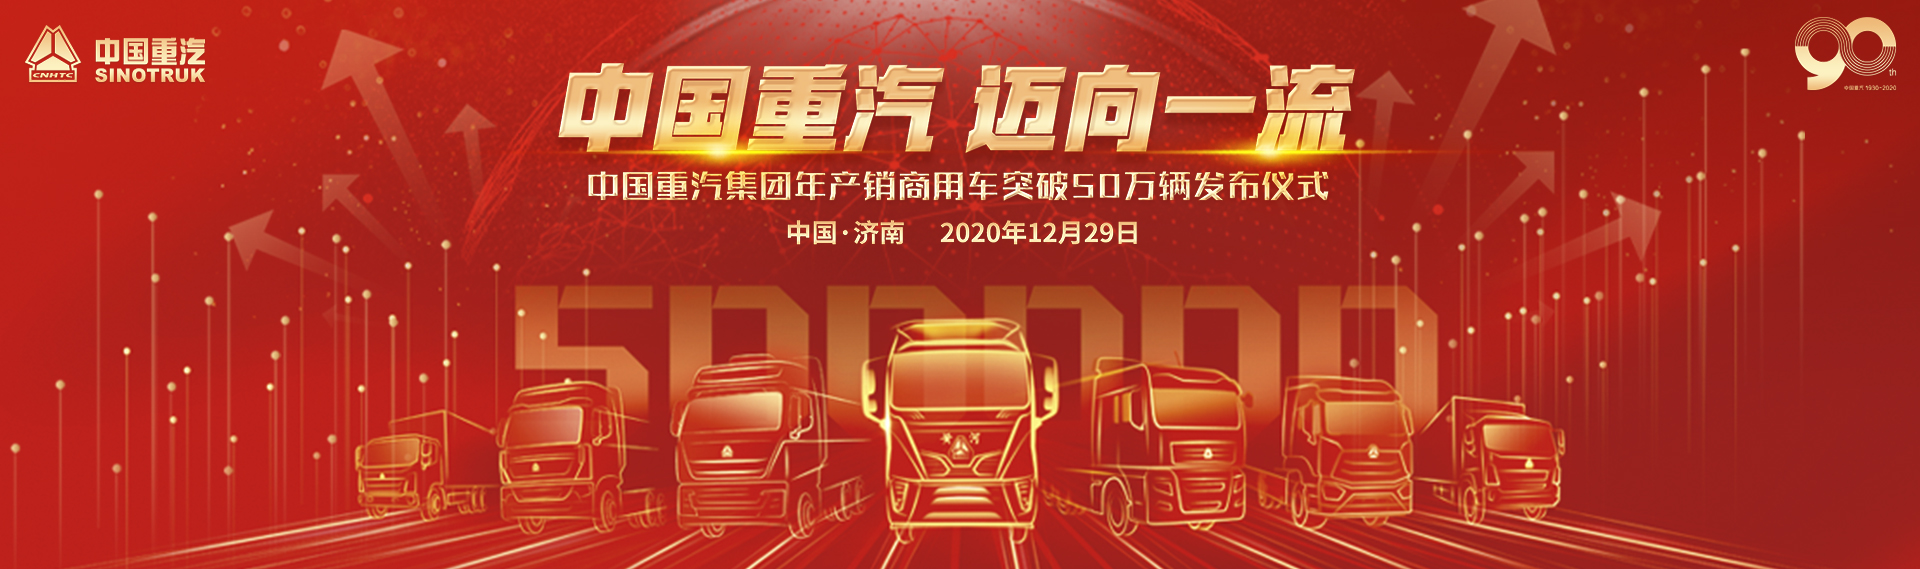 中国重汽集团年产销商用车突破50万辆发布仪式